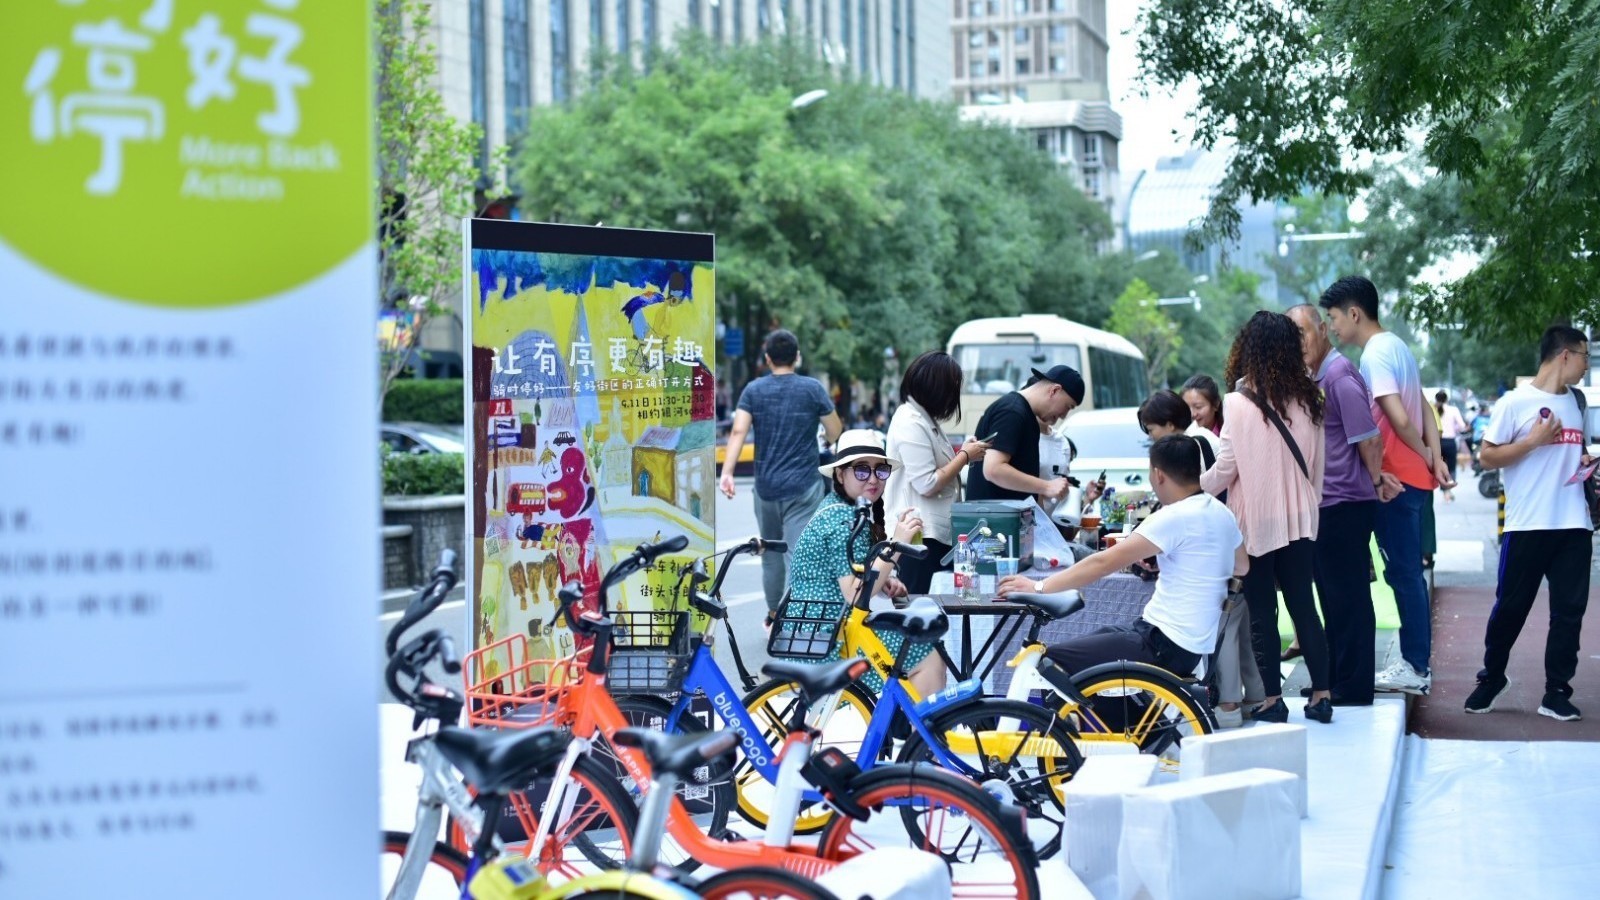 北京国际设计周上演互动艺术 倡导共享单车秩序停放